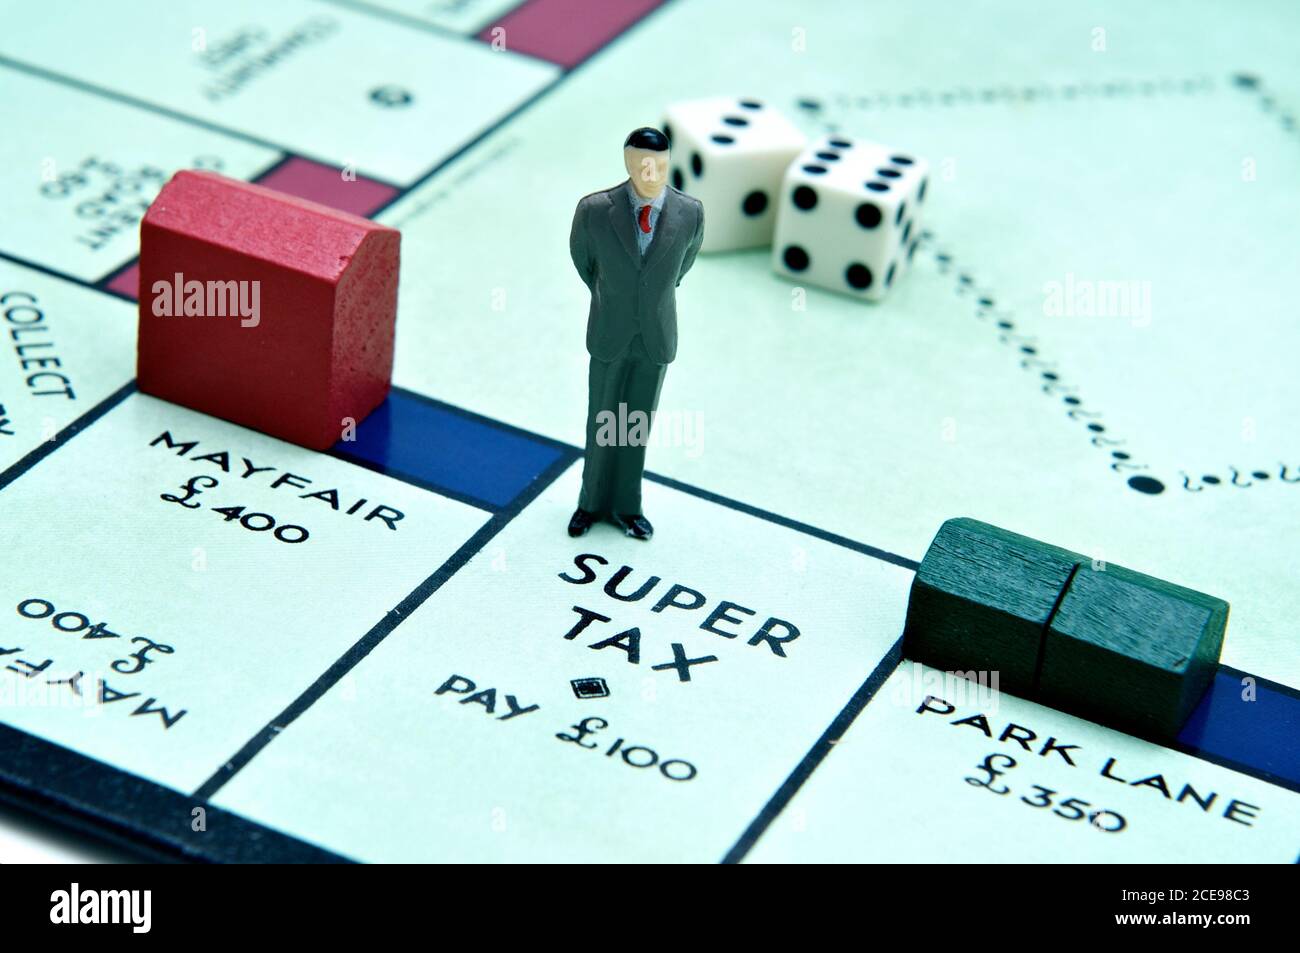 London, Großbritannien - 2. Juli 2011: Modellfigur eines Geschäftsmanns, der bei Super Tax auf dem Brettspiel Monopoly steht Modellfigur eines Geschäftsmanns, der bei der SuperTax steht Stockfoto